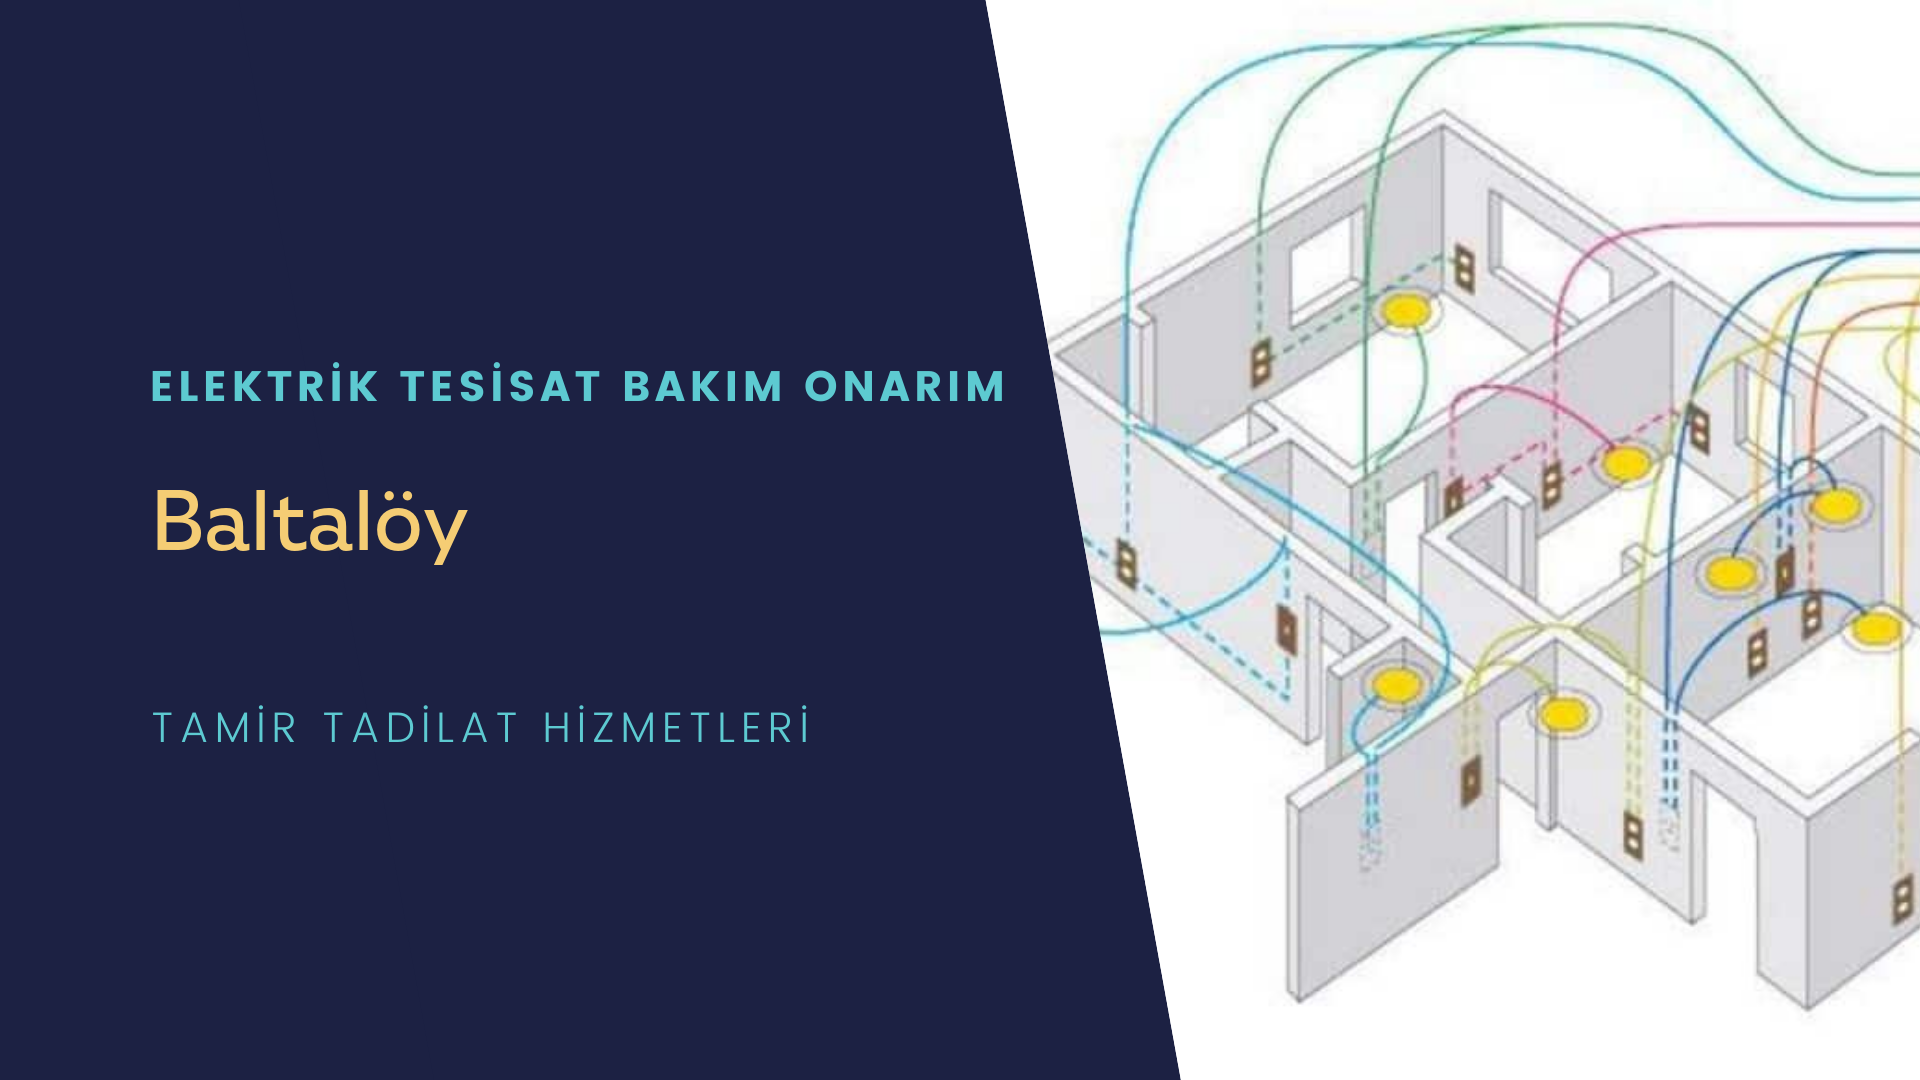 Baltalöy'de elektrik tesisatı ustalarımı arıyorsunuz doğru adrestenizi Baltalöy elektrik tesisatı ustalarımız 7/24 sizlere hizmet vermekten mutluluk duyar.